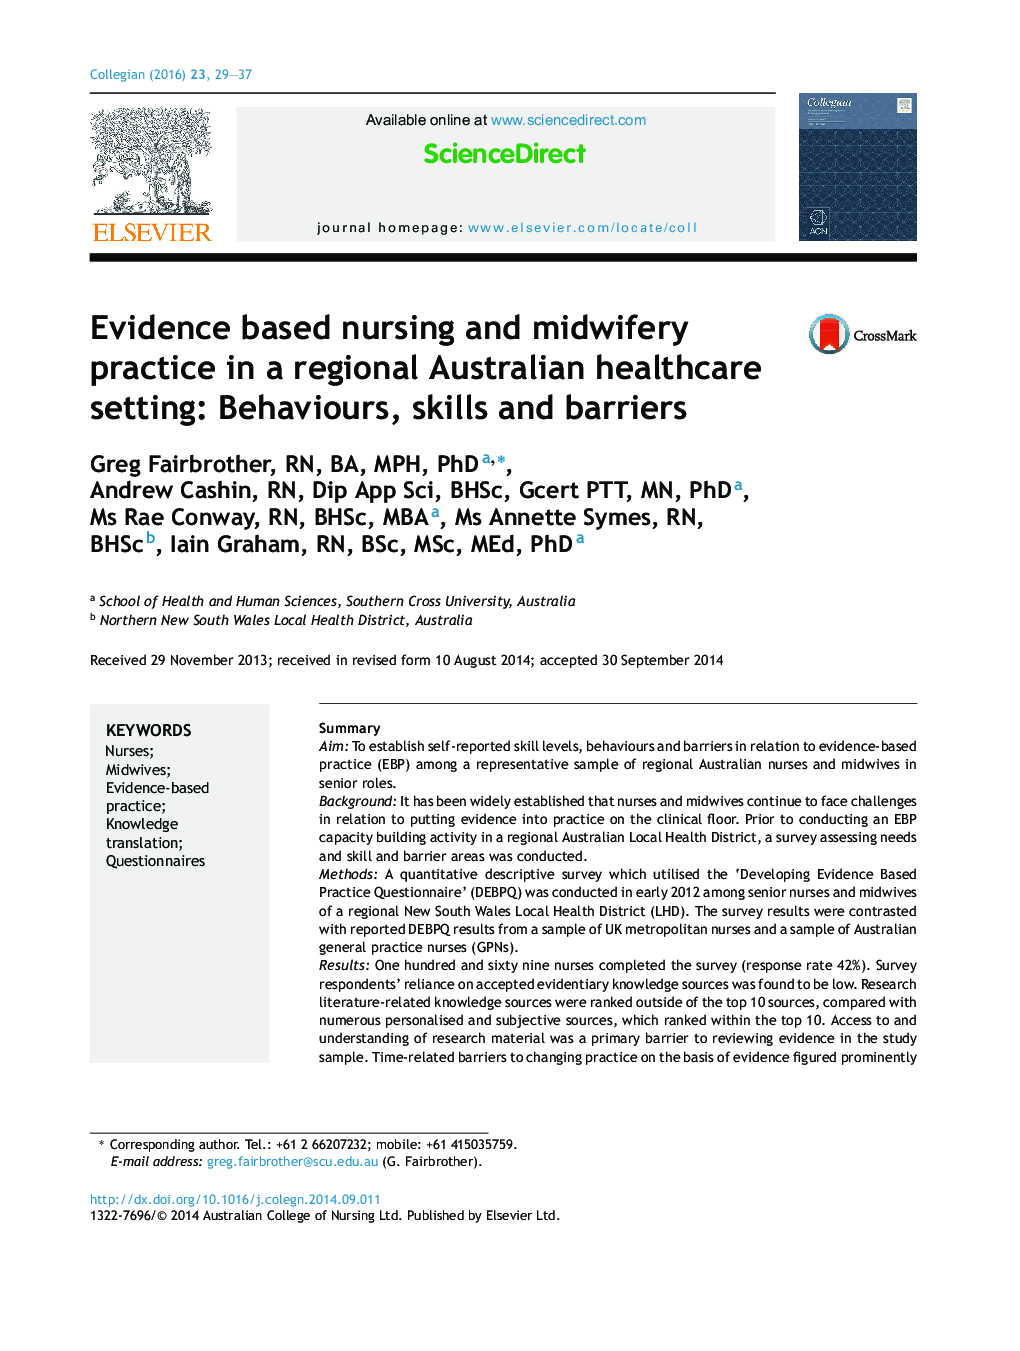 پرستاری مبتنی بر شواهد و عملکرد مامایی در مراکز بهداشتی استرالیا منطقه: رفتارهایی از قبیل، مهارت ها و موانع